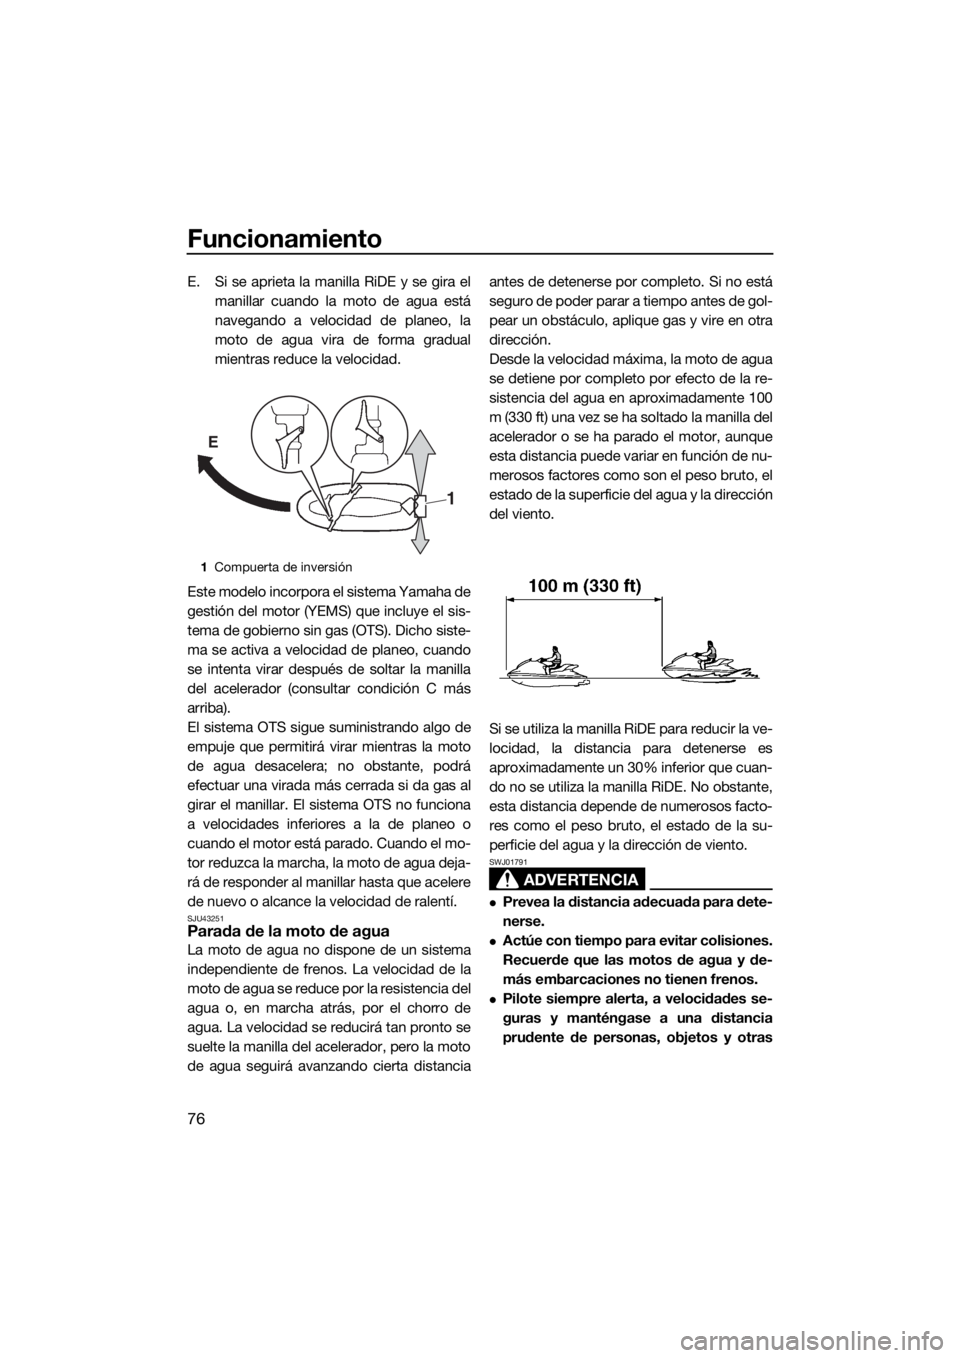 YAMAHA VX CRUISER 2015  Manuale de Empleo (in Spanish) Funcionamiento
76
E. Si se aprieta la manilla RiDE y se gira el
manillar cuando la moto de agua está
navegando a velocidad de planeo, la
moto de agua vira de forma gradual
mientras reduce la velocida